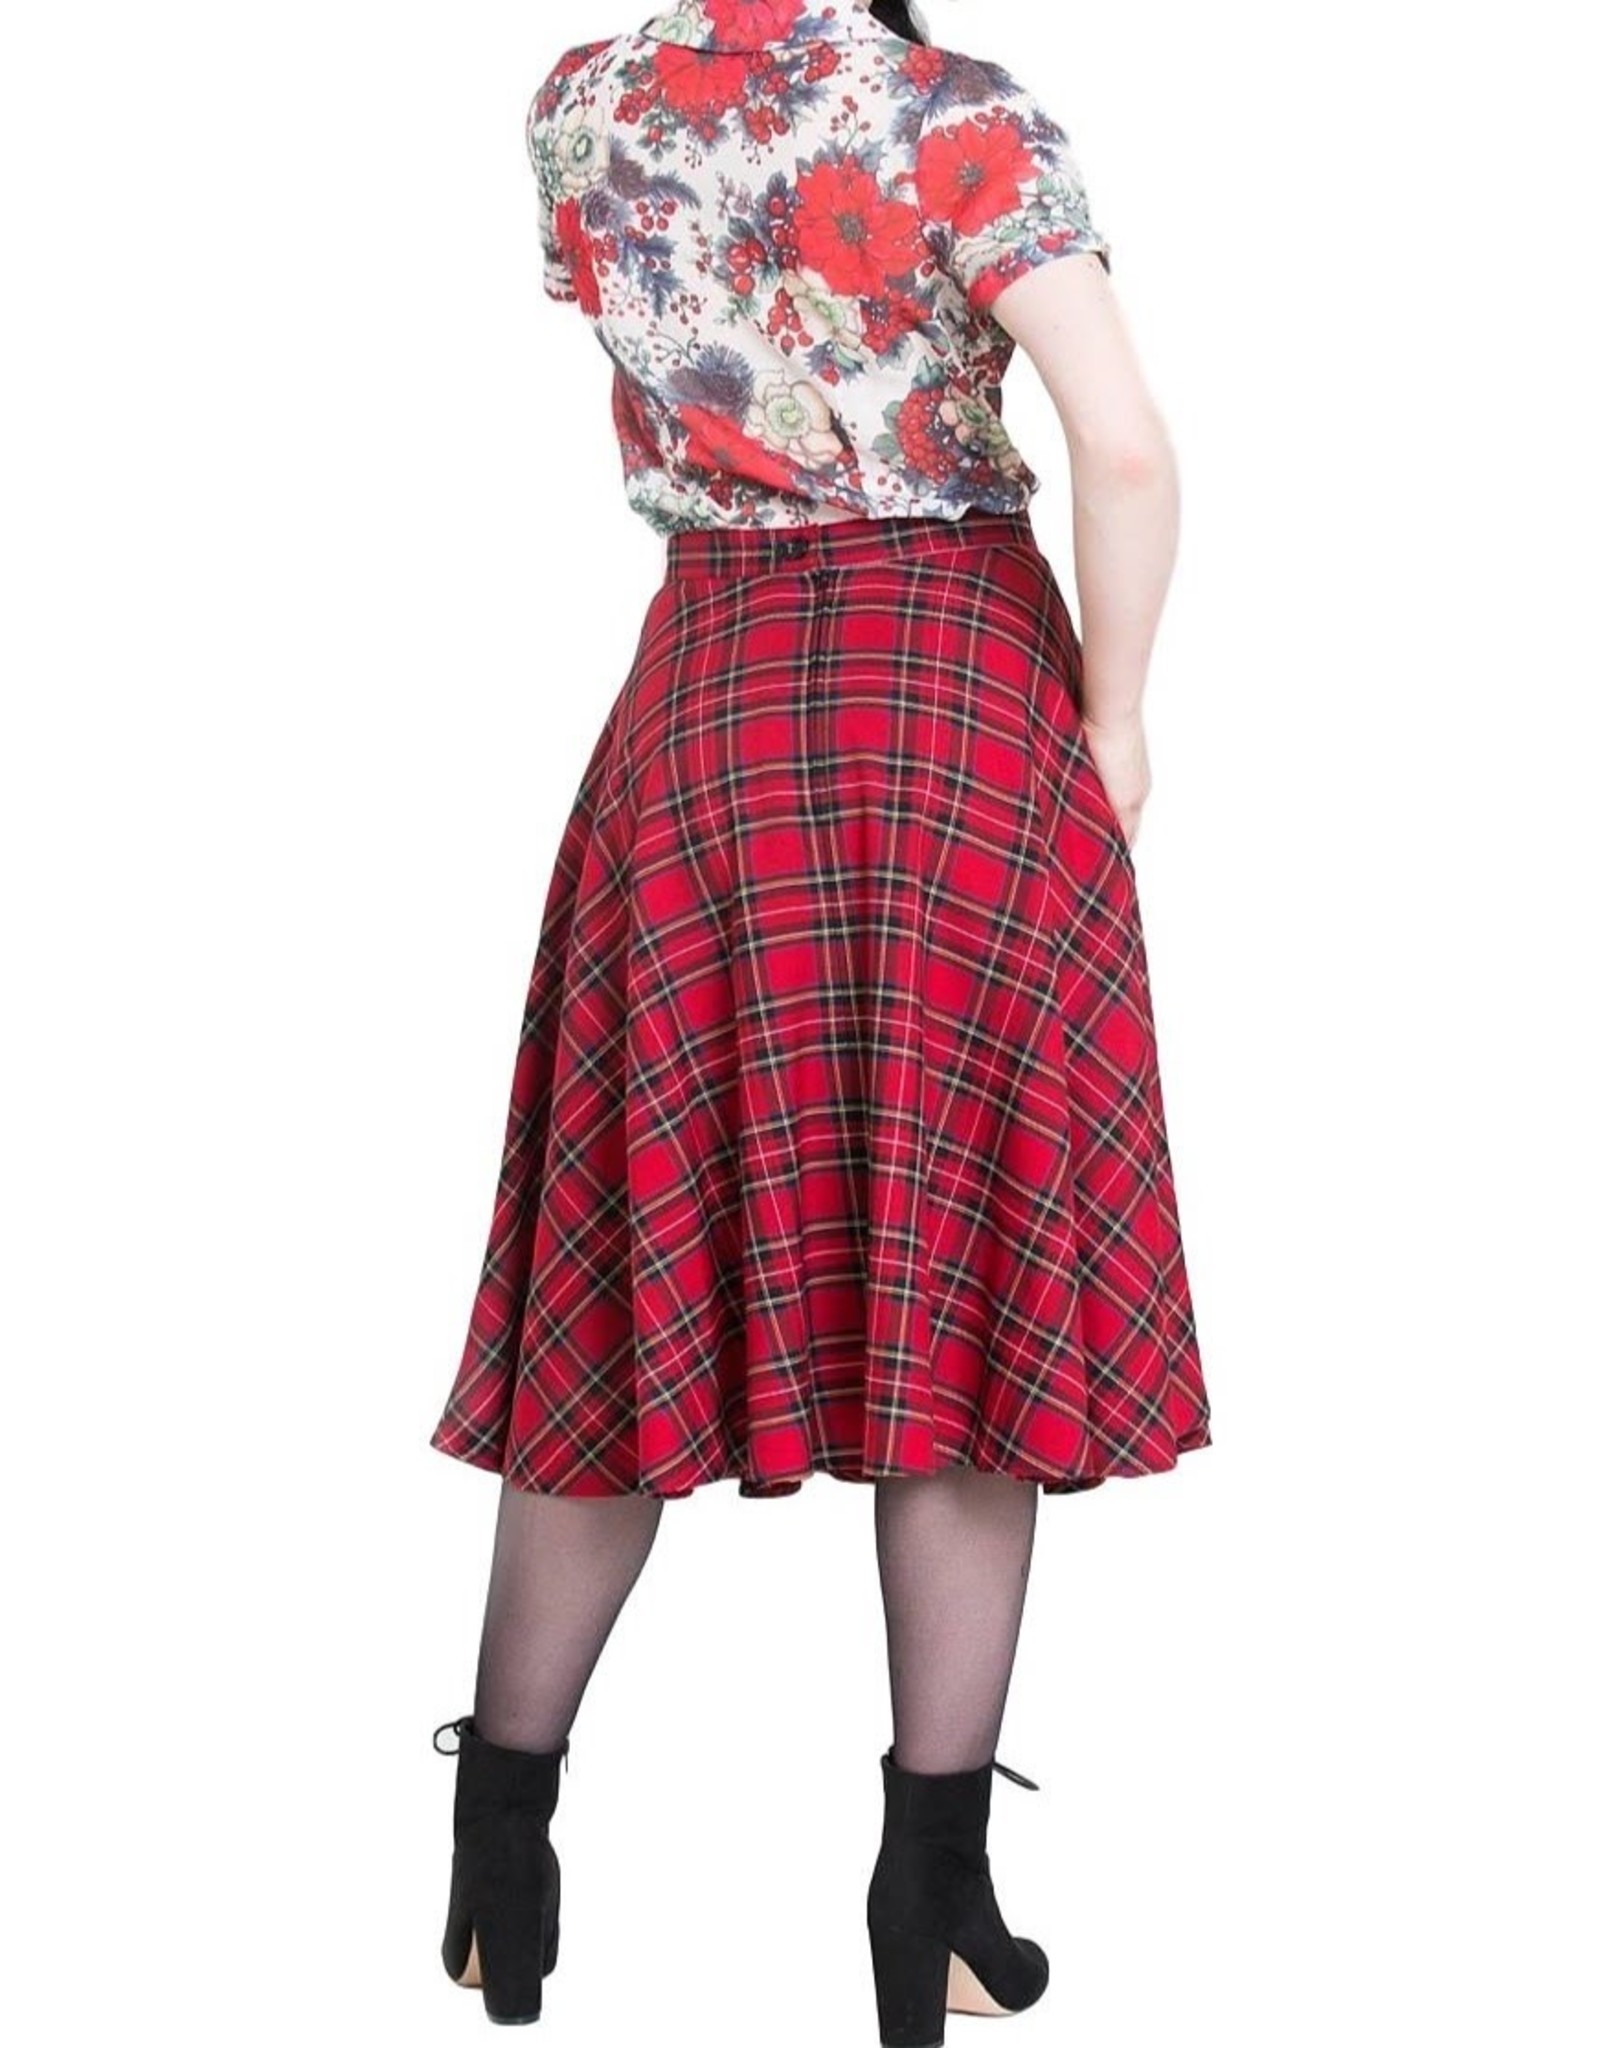 HELL BUNNY - Irvine 50's Skirt